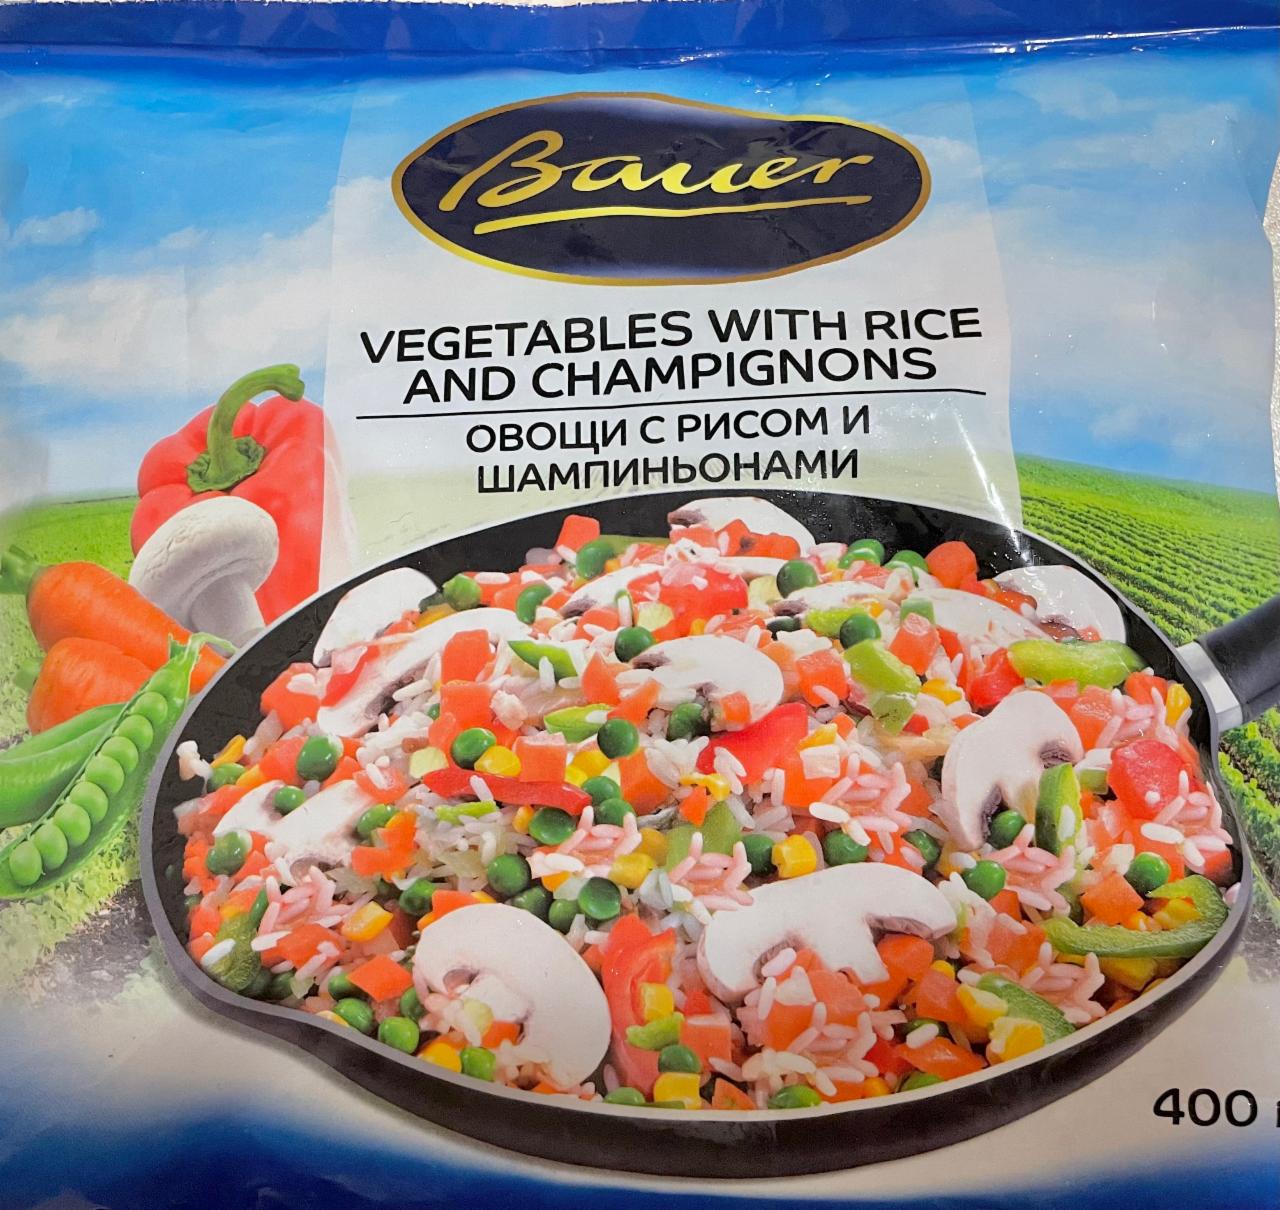 Фото - овощная смесь с рисом и шампиньонами для жарки Bauer